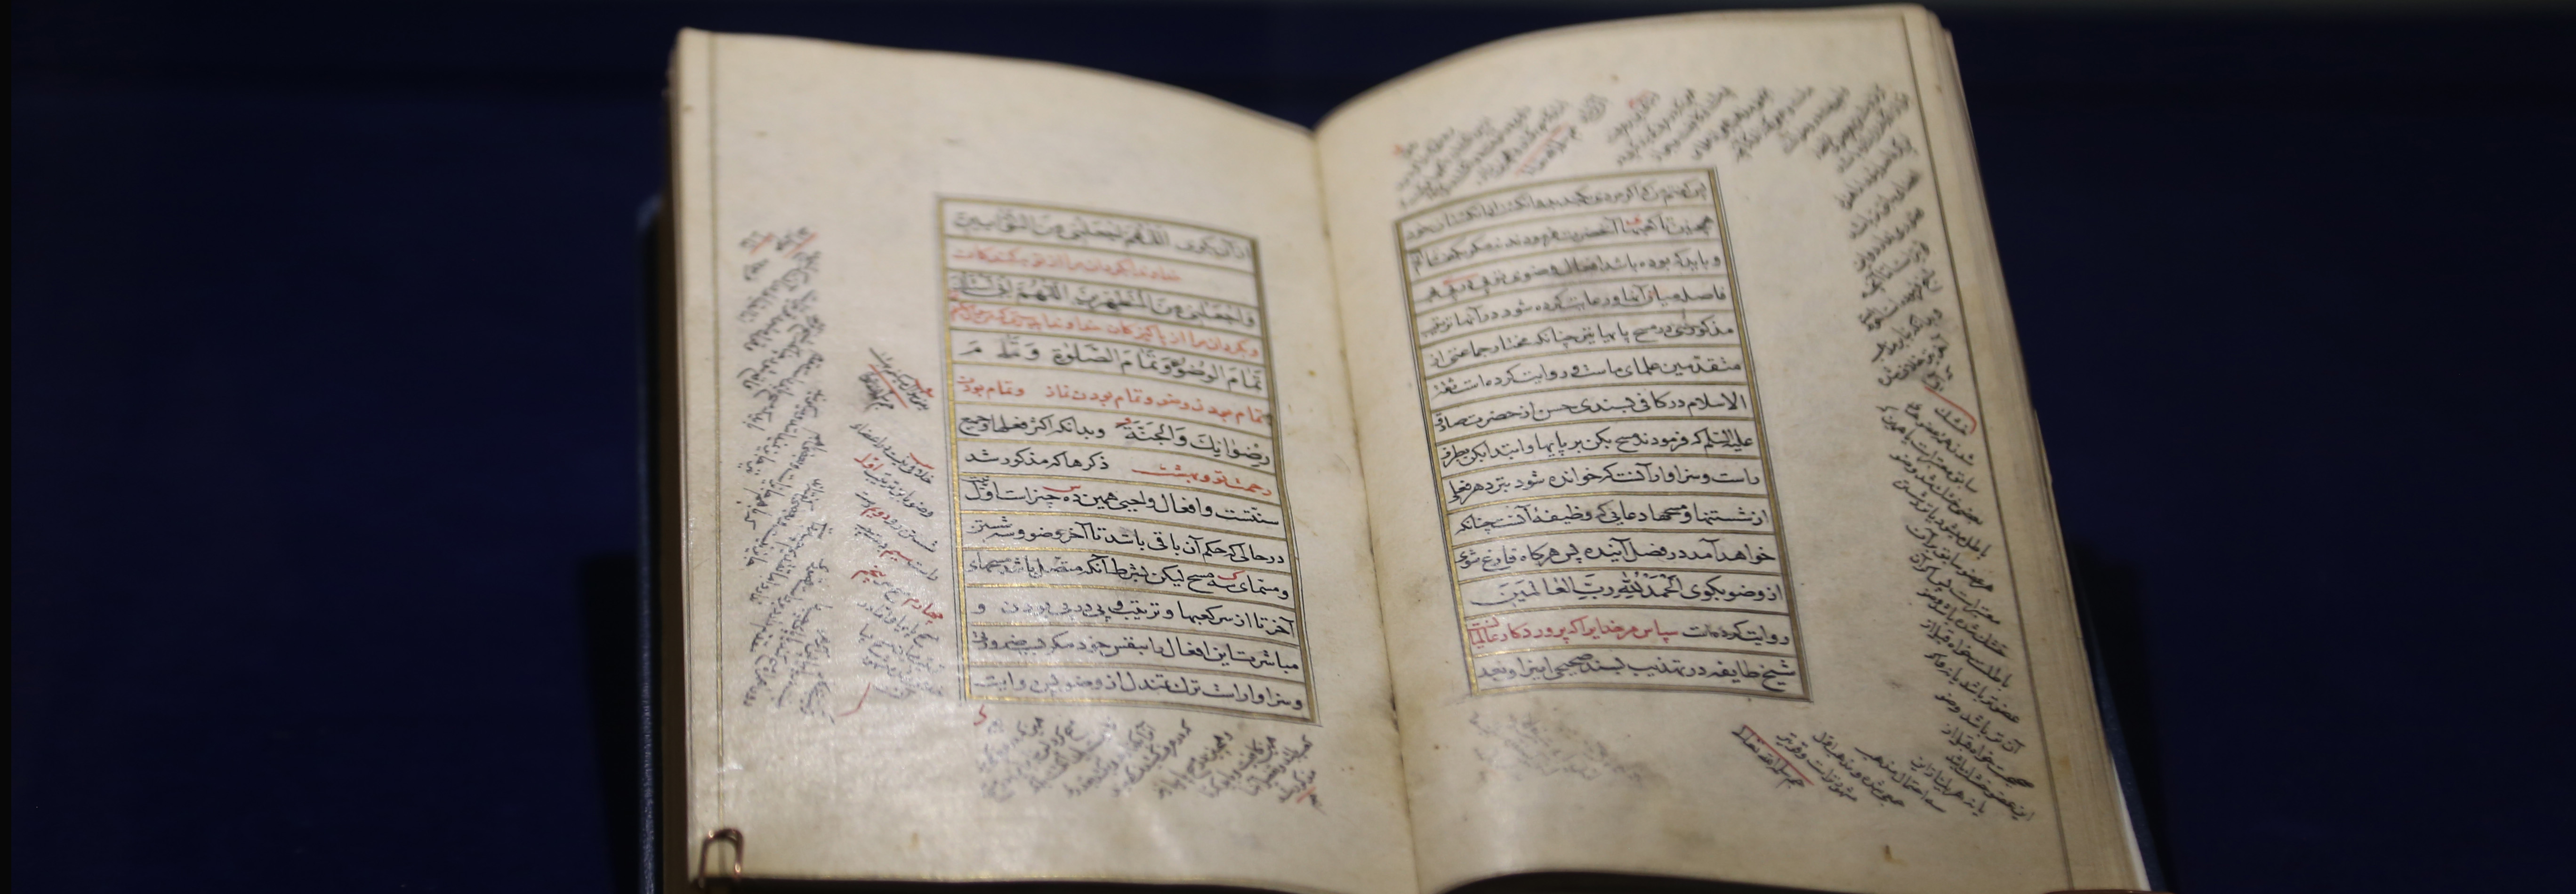 نمایش کتاب «مفتاح الفلاح» در موزه کتابخانه اختصاصی مجموعه نیاوران